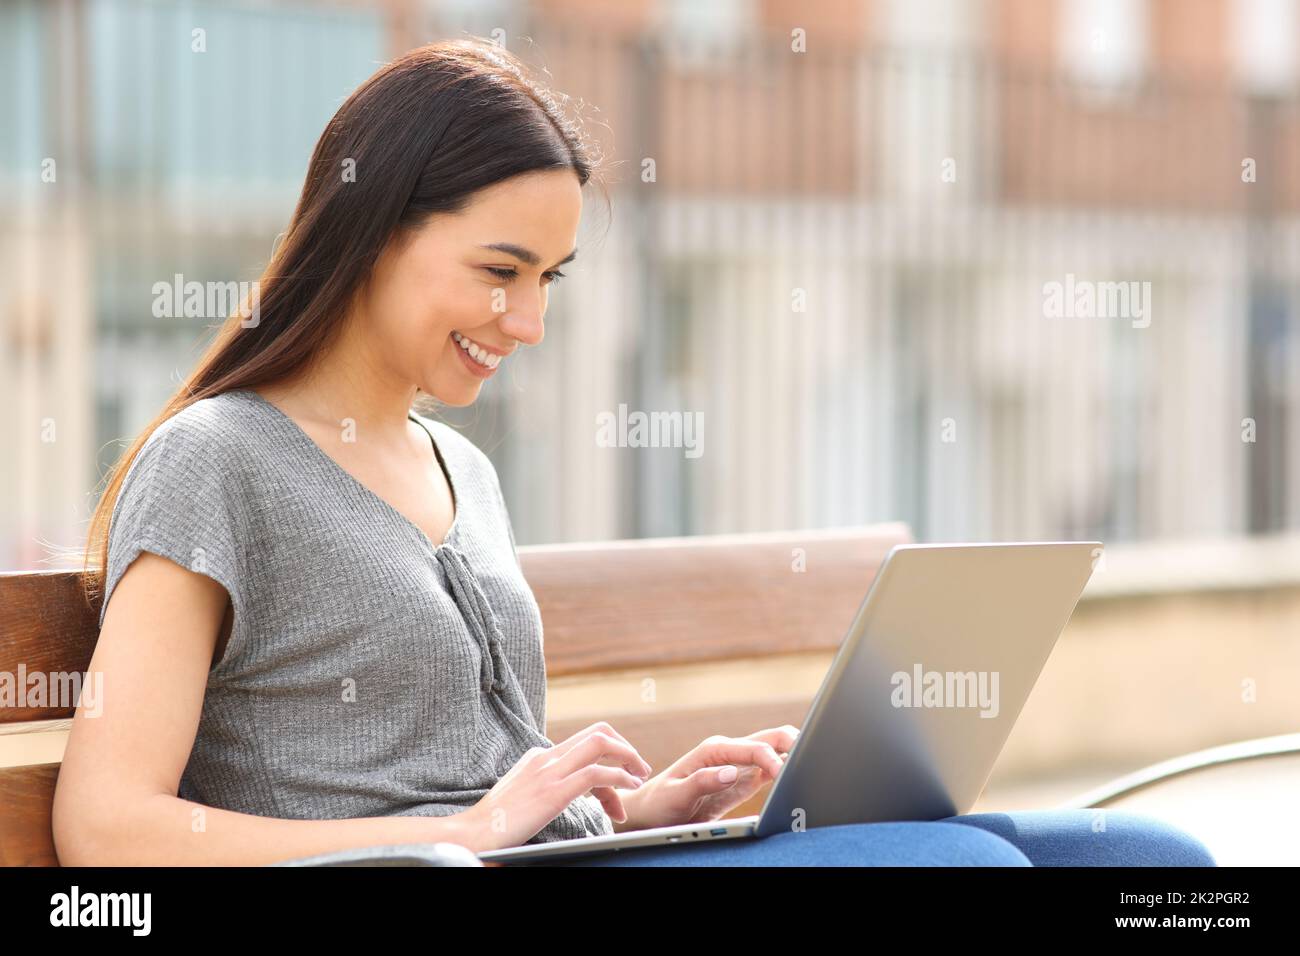 Bonne femme utilisant un ordinateur portable assis sur un banc dans la rue Banque D'Images